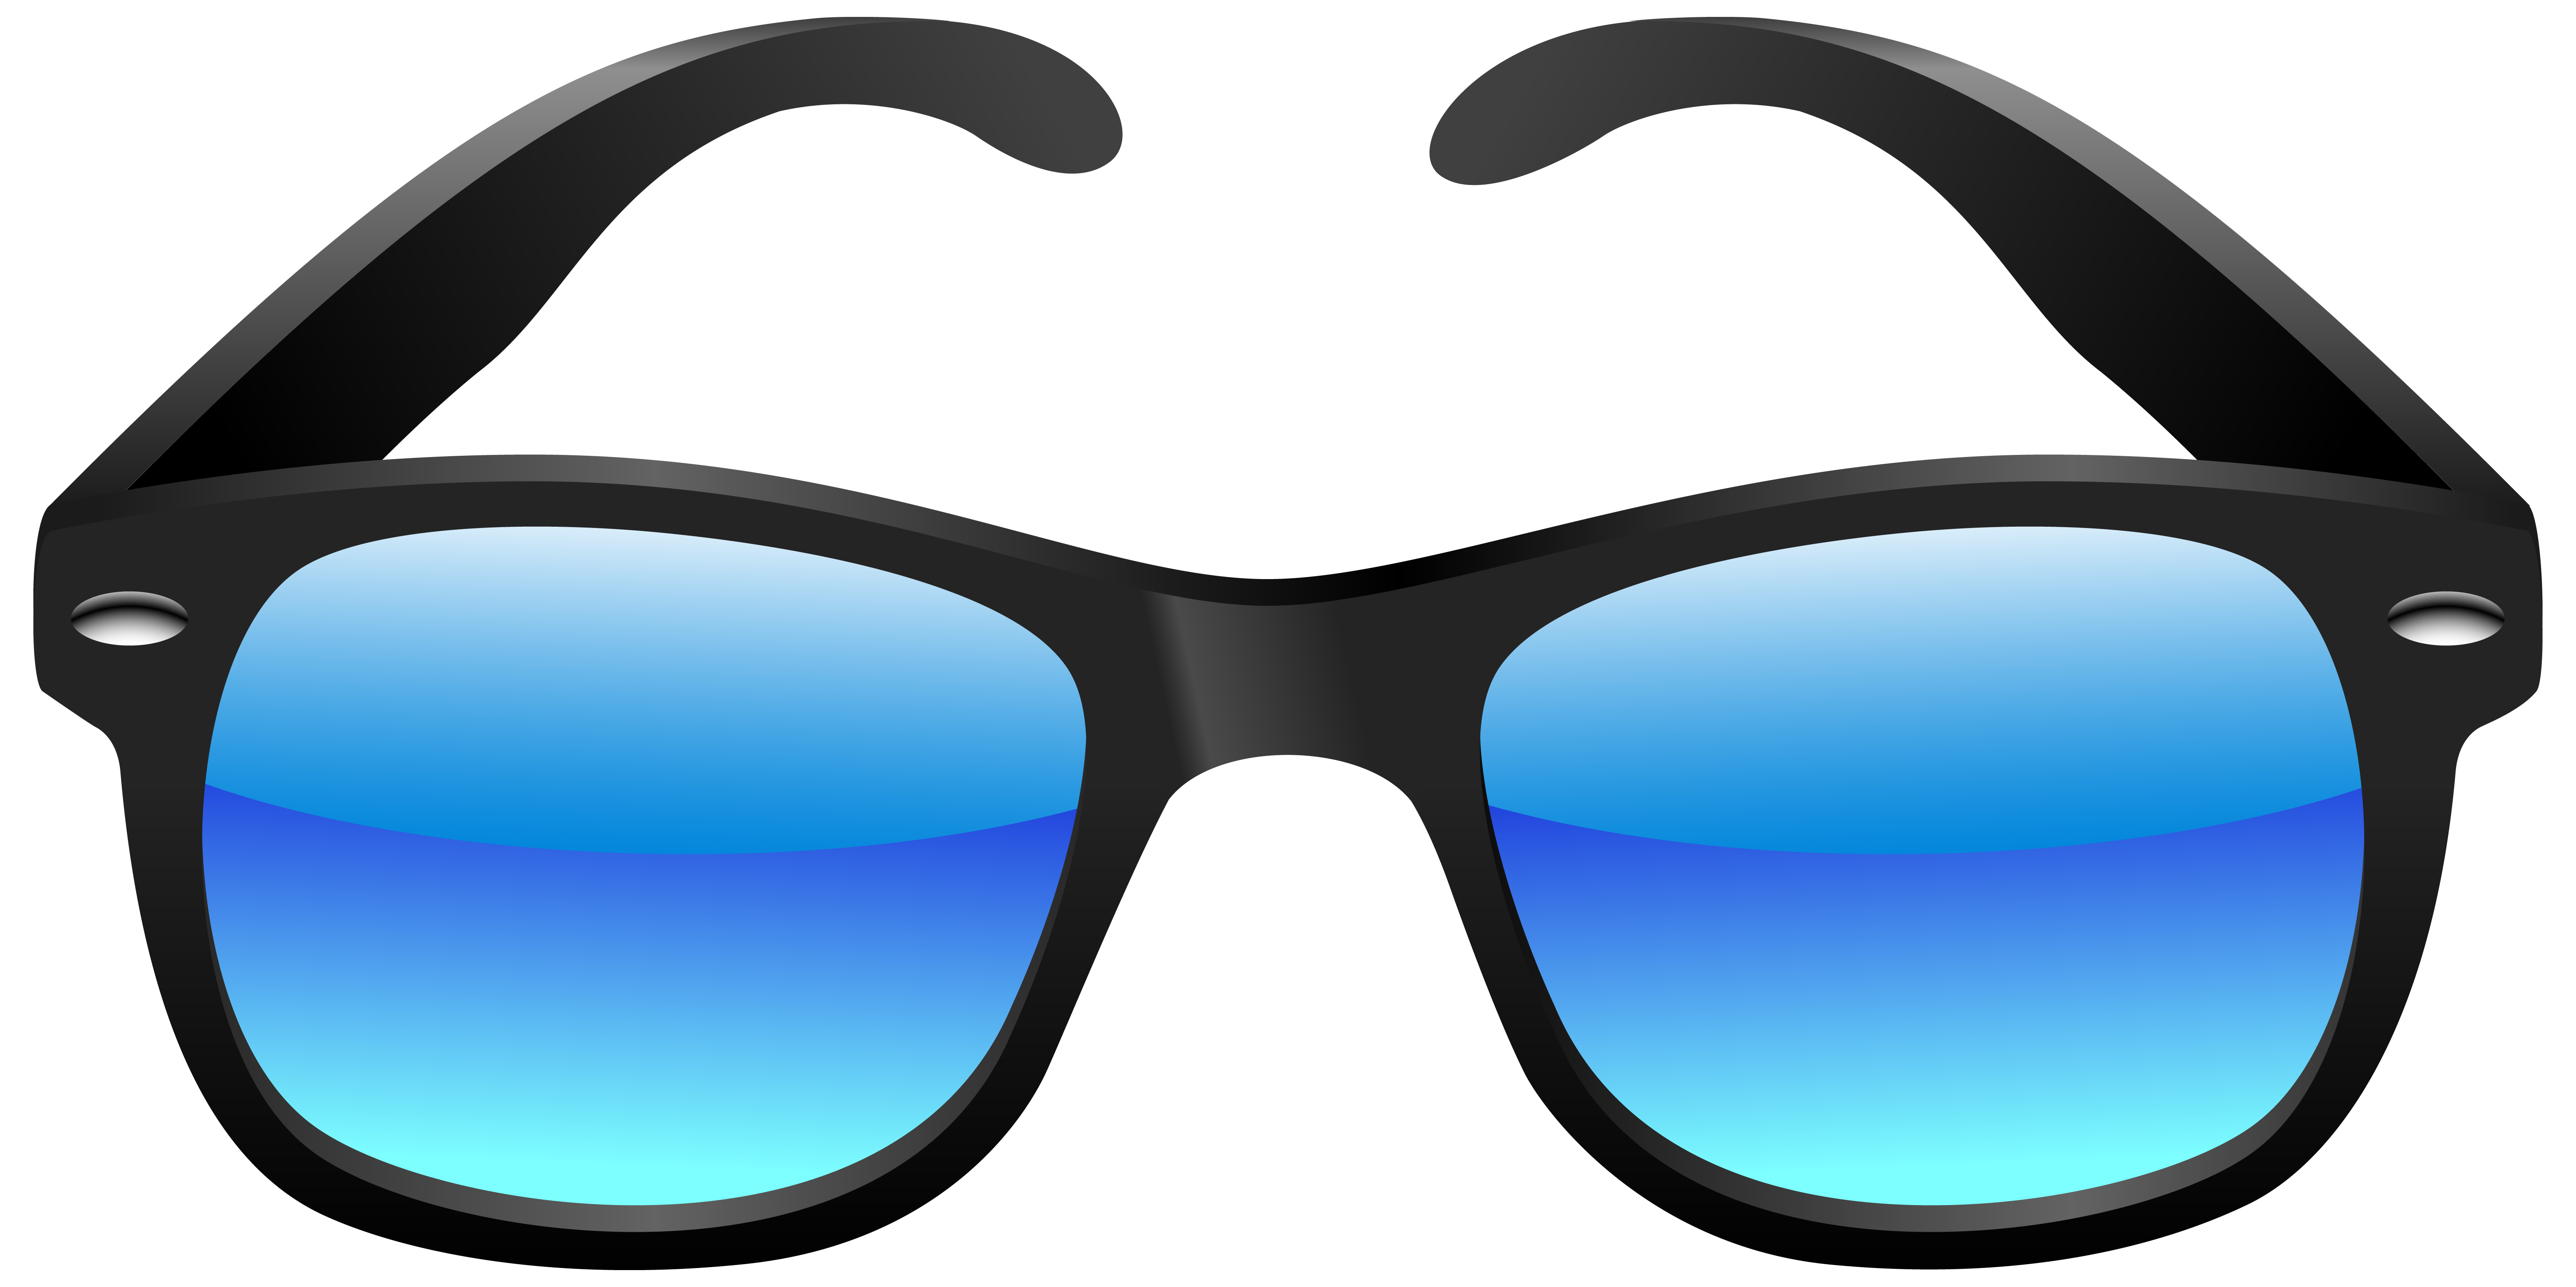 Mustache clipart goggles. Clip art of sunglasses